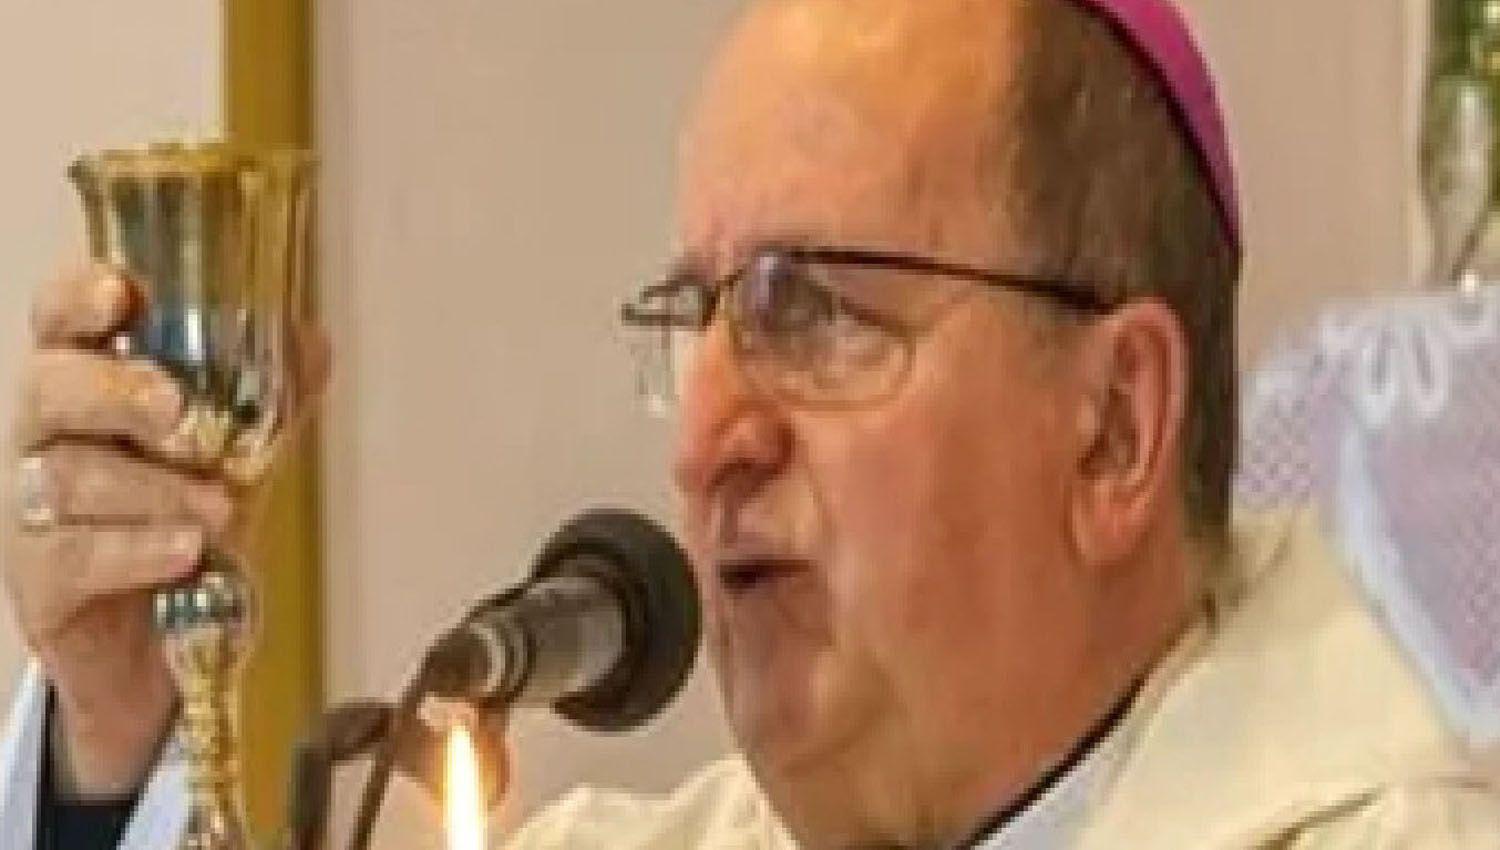 Monjas denunciaron al arzobispo y a otros dos curas de Salta por violencia de geacutenero